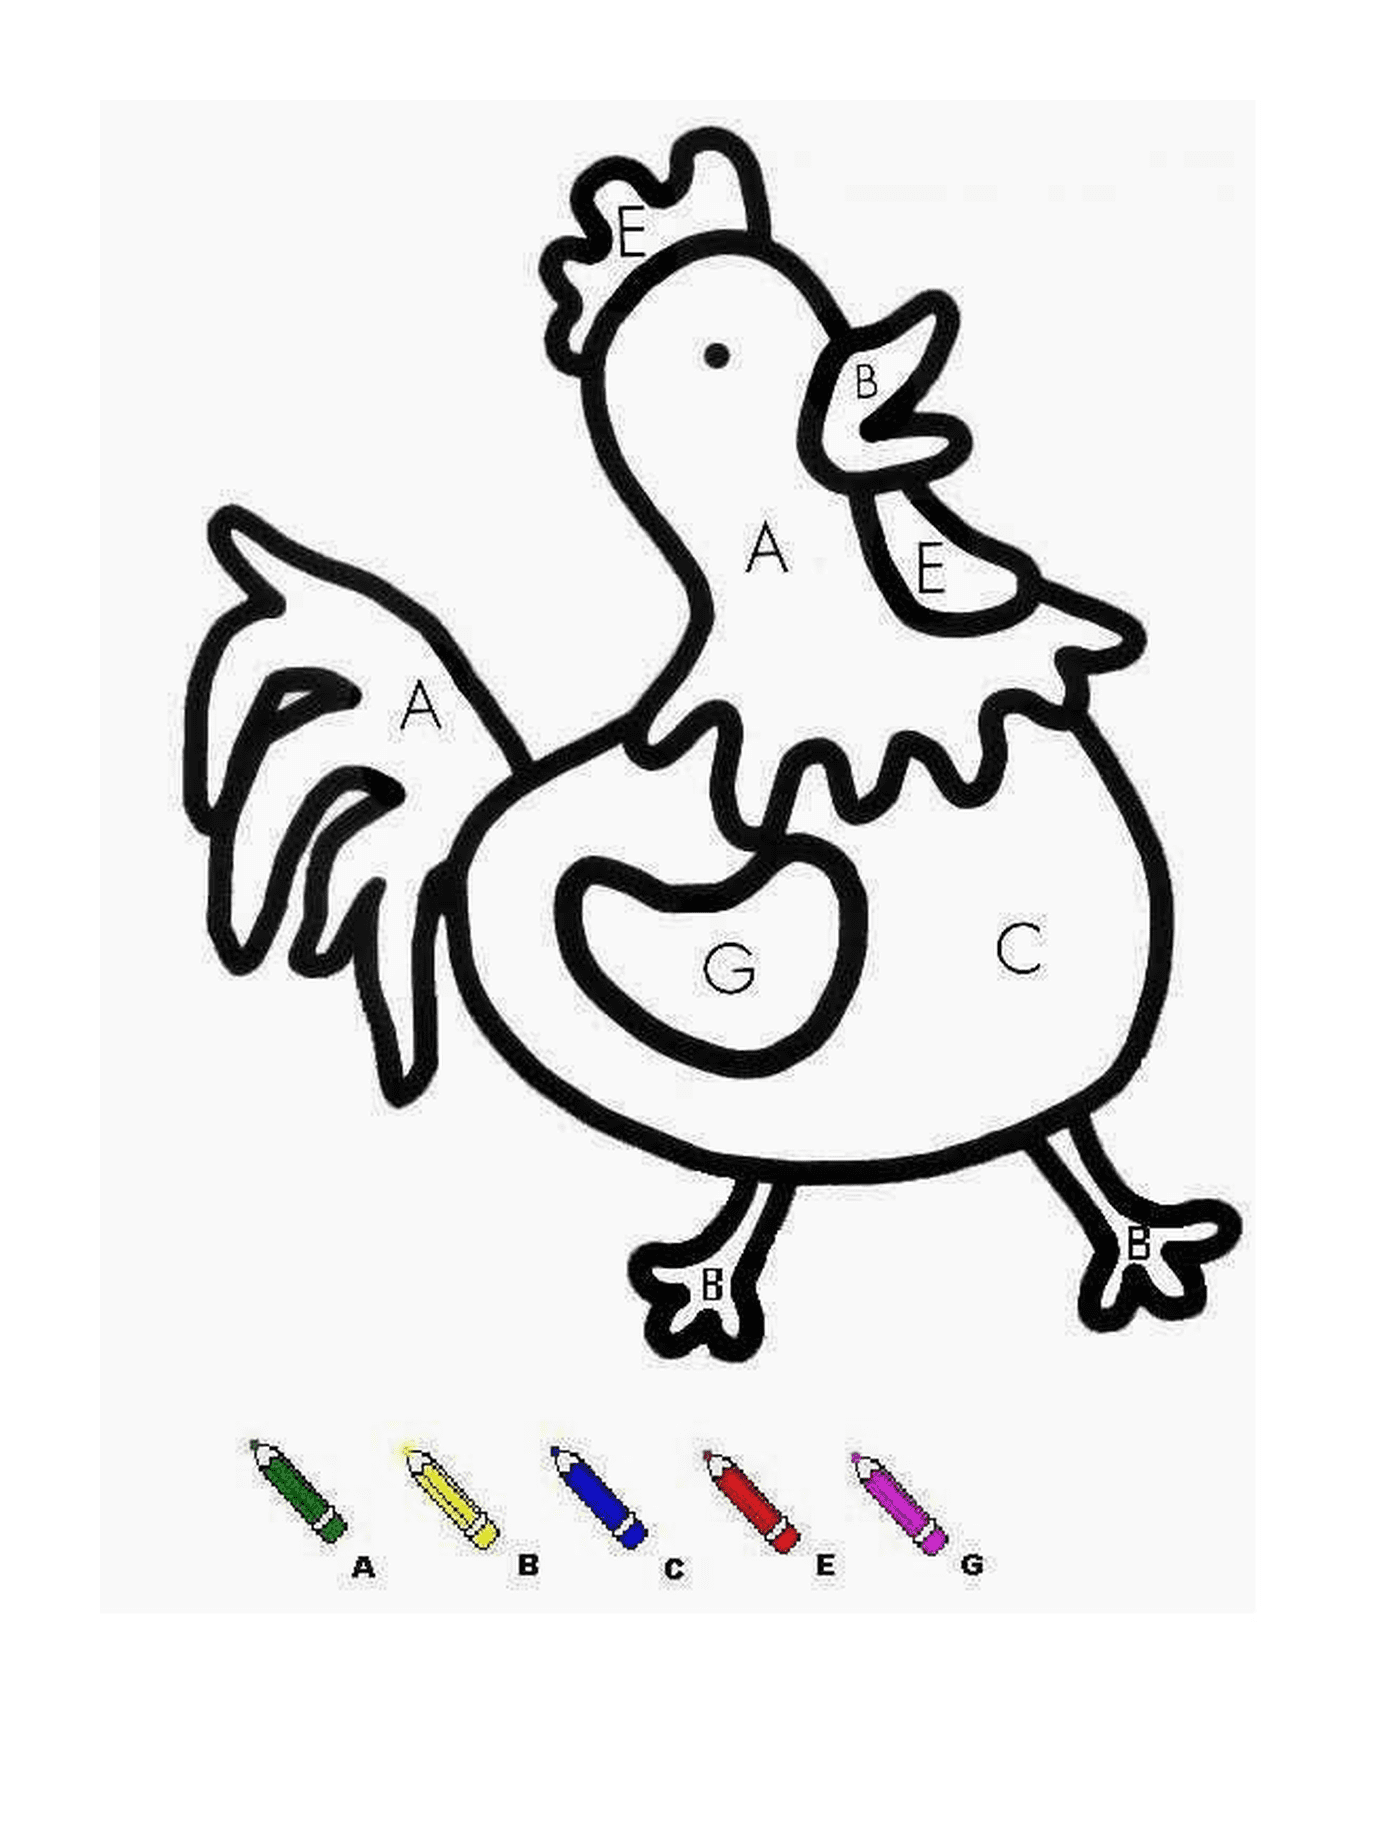  Un pollo con marcatori colorati 